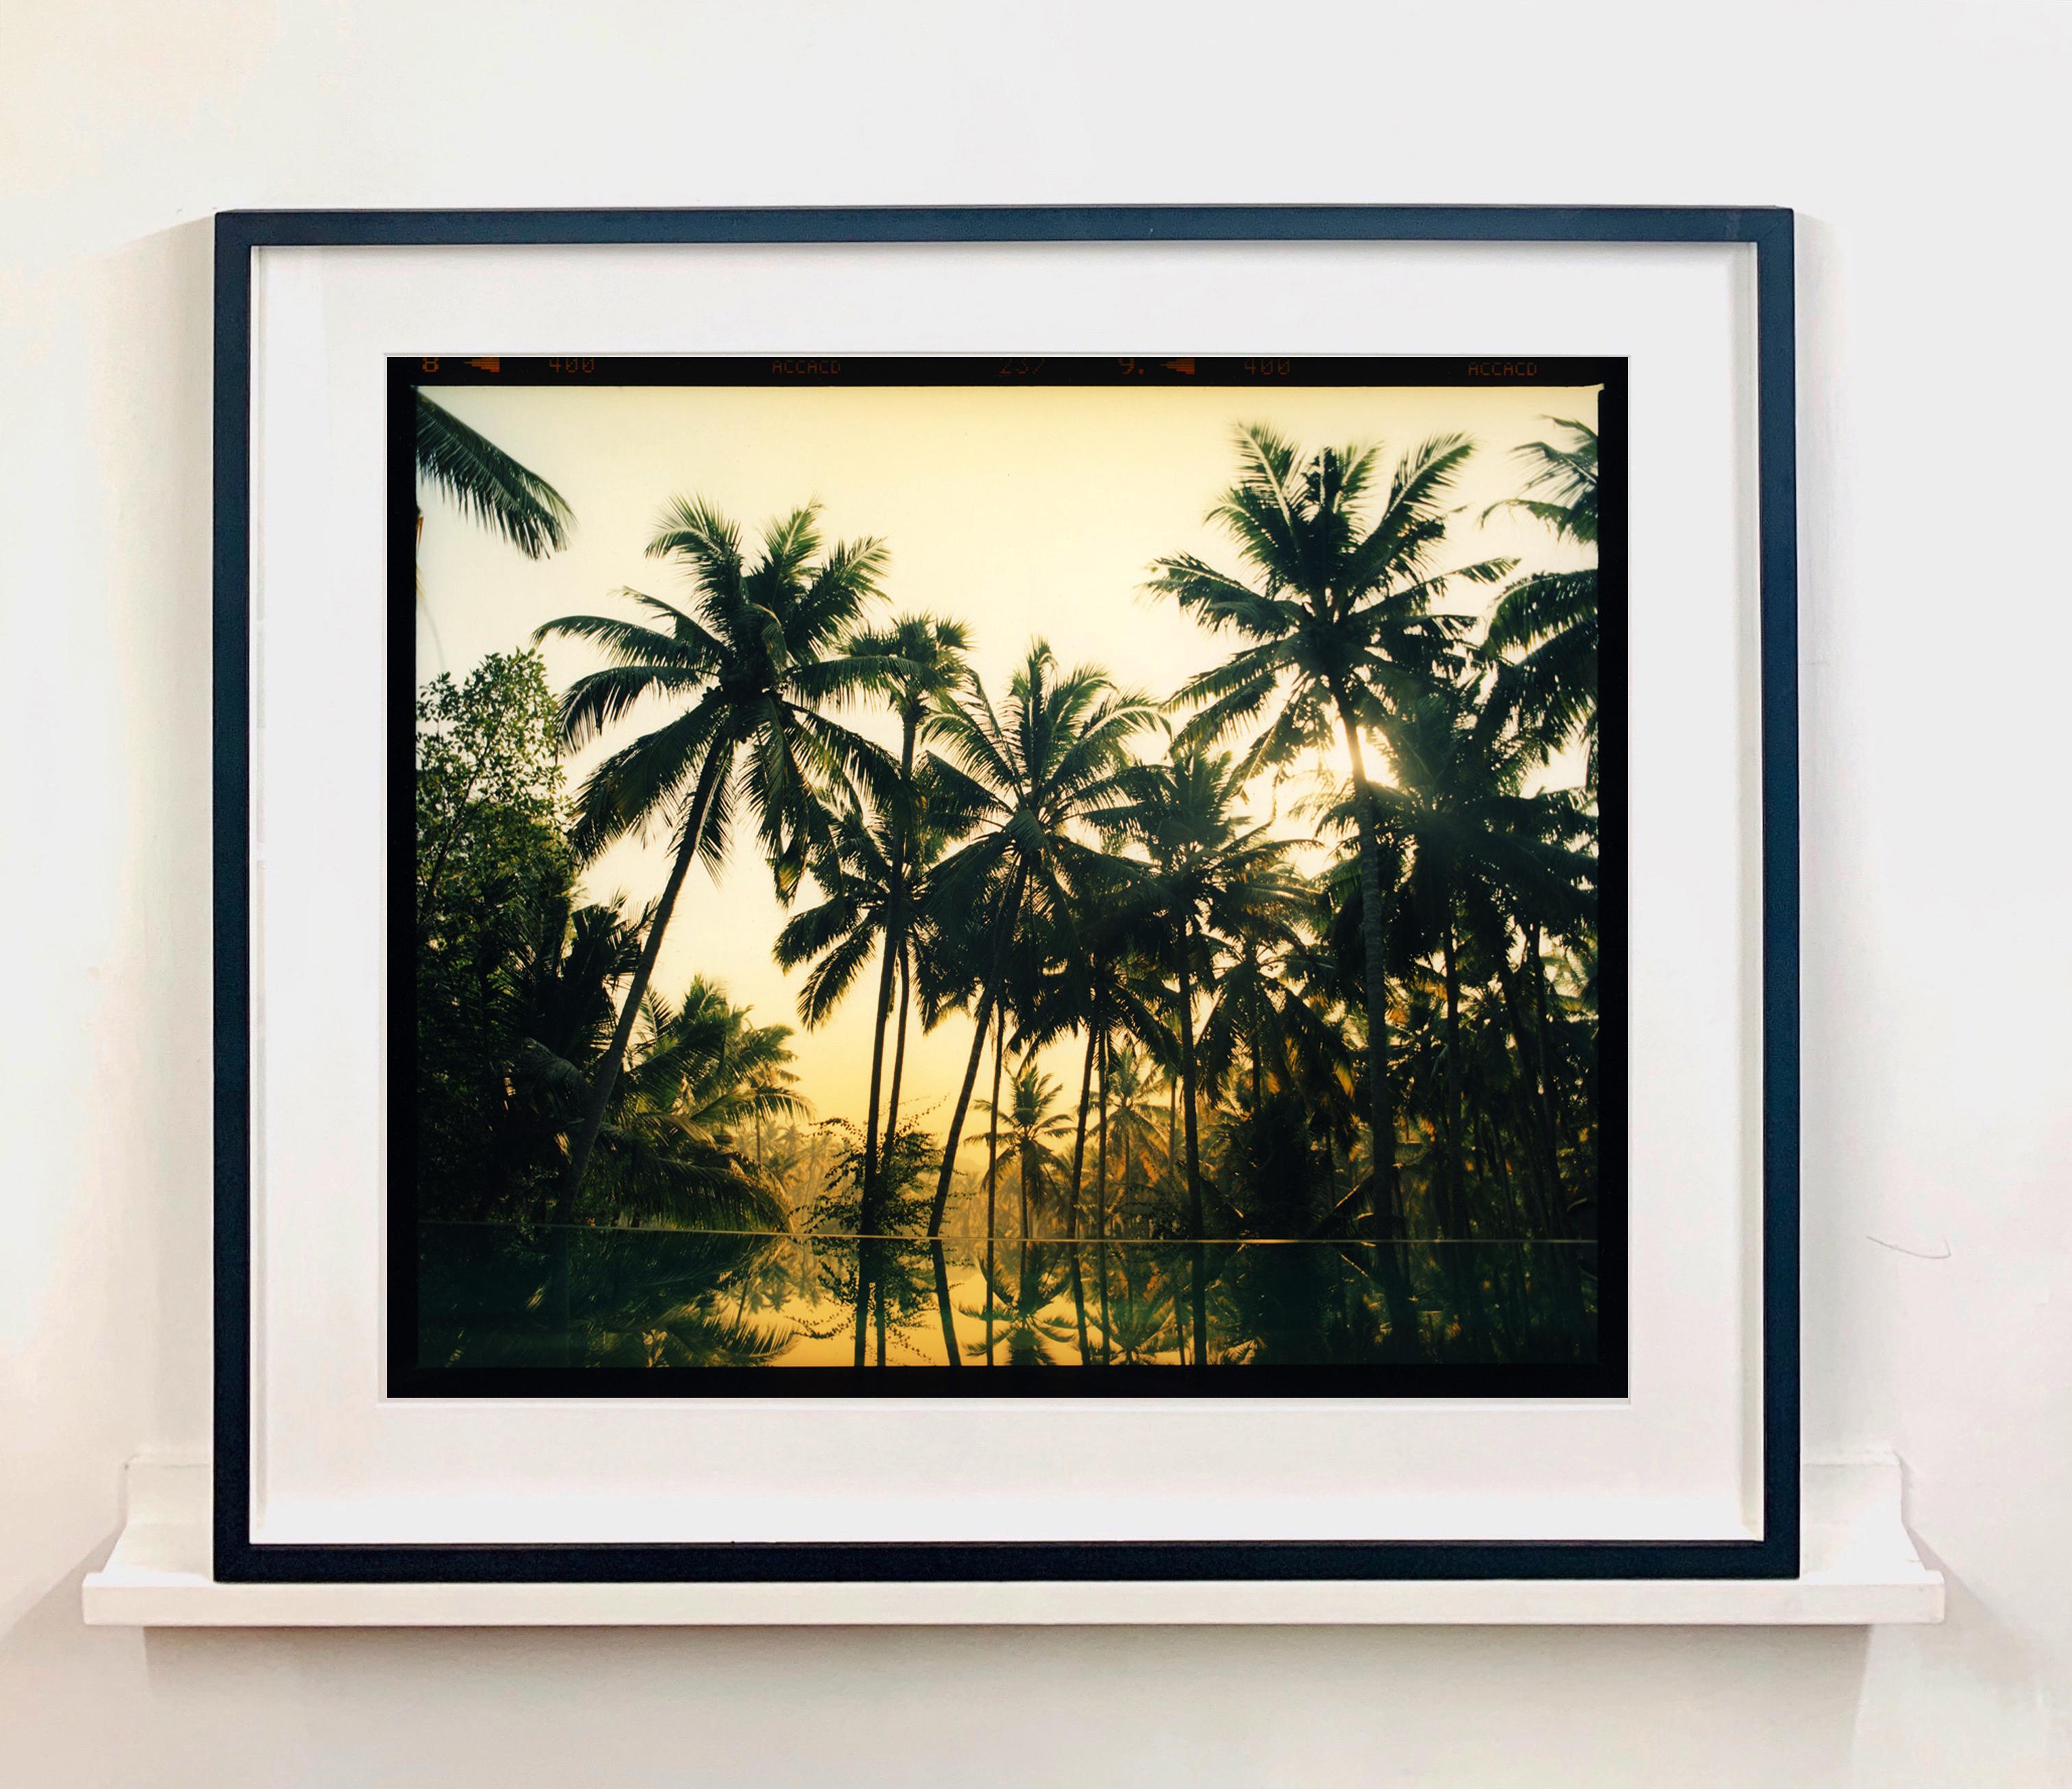 Photographie du voyage de Richard en Inde, un pèlerinage du Kerala au sud, à Meerut, la ville natale de son grand-père, au nord. Tourné au Kerala en 2013, ce magnifique lagon de palmiers réchauffe une pièce et vous emmène dans un endroit tropical.